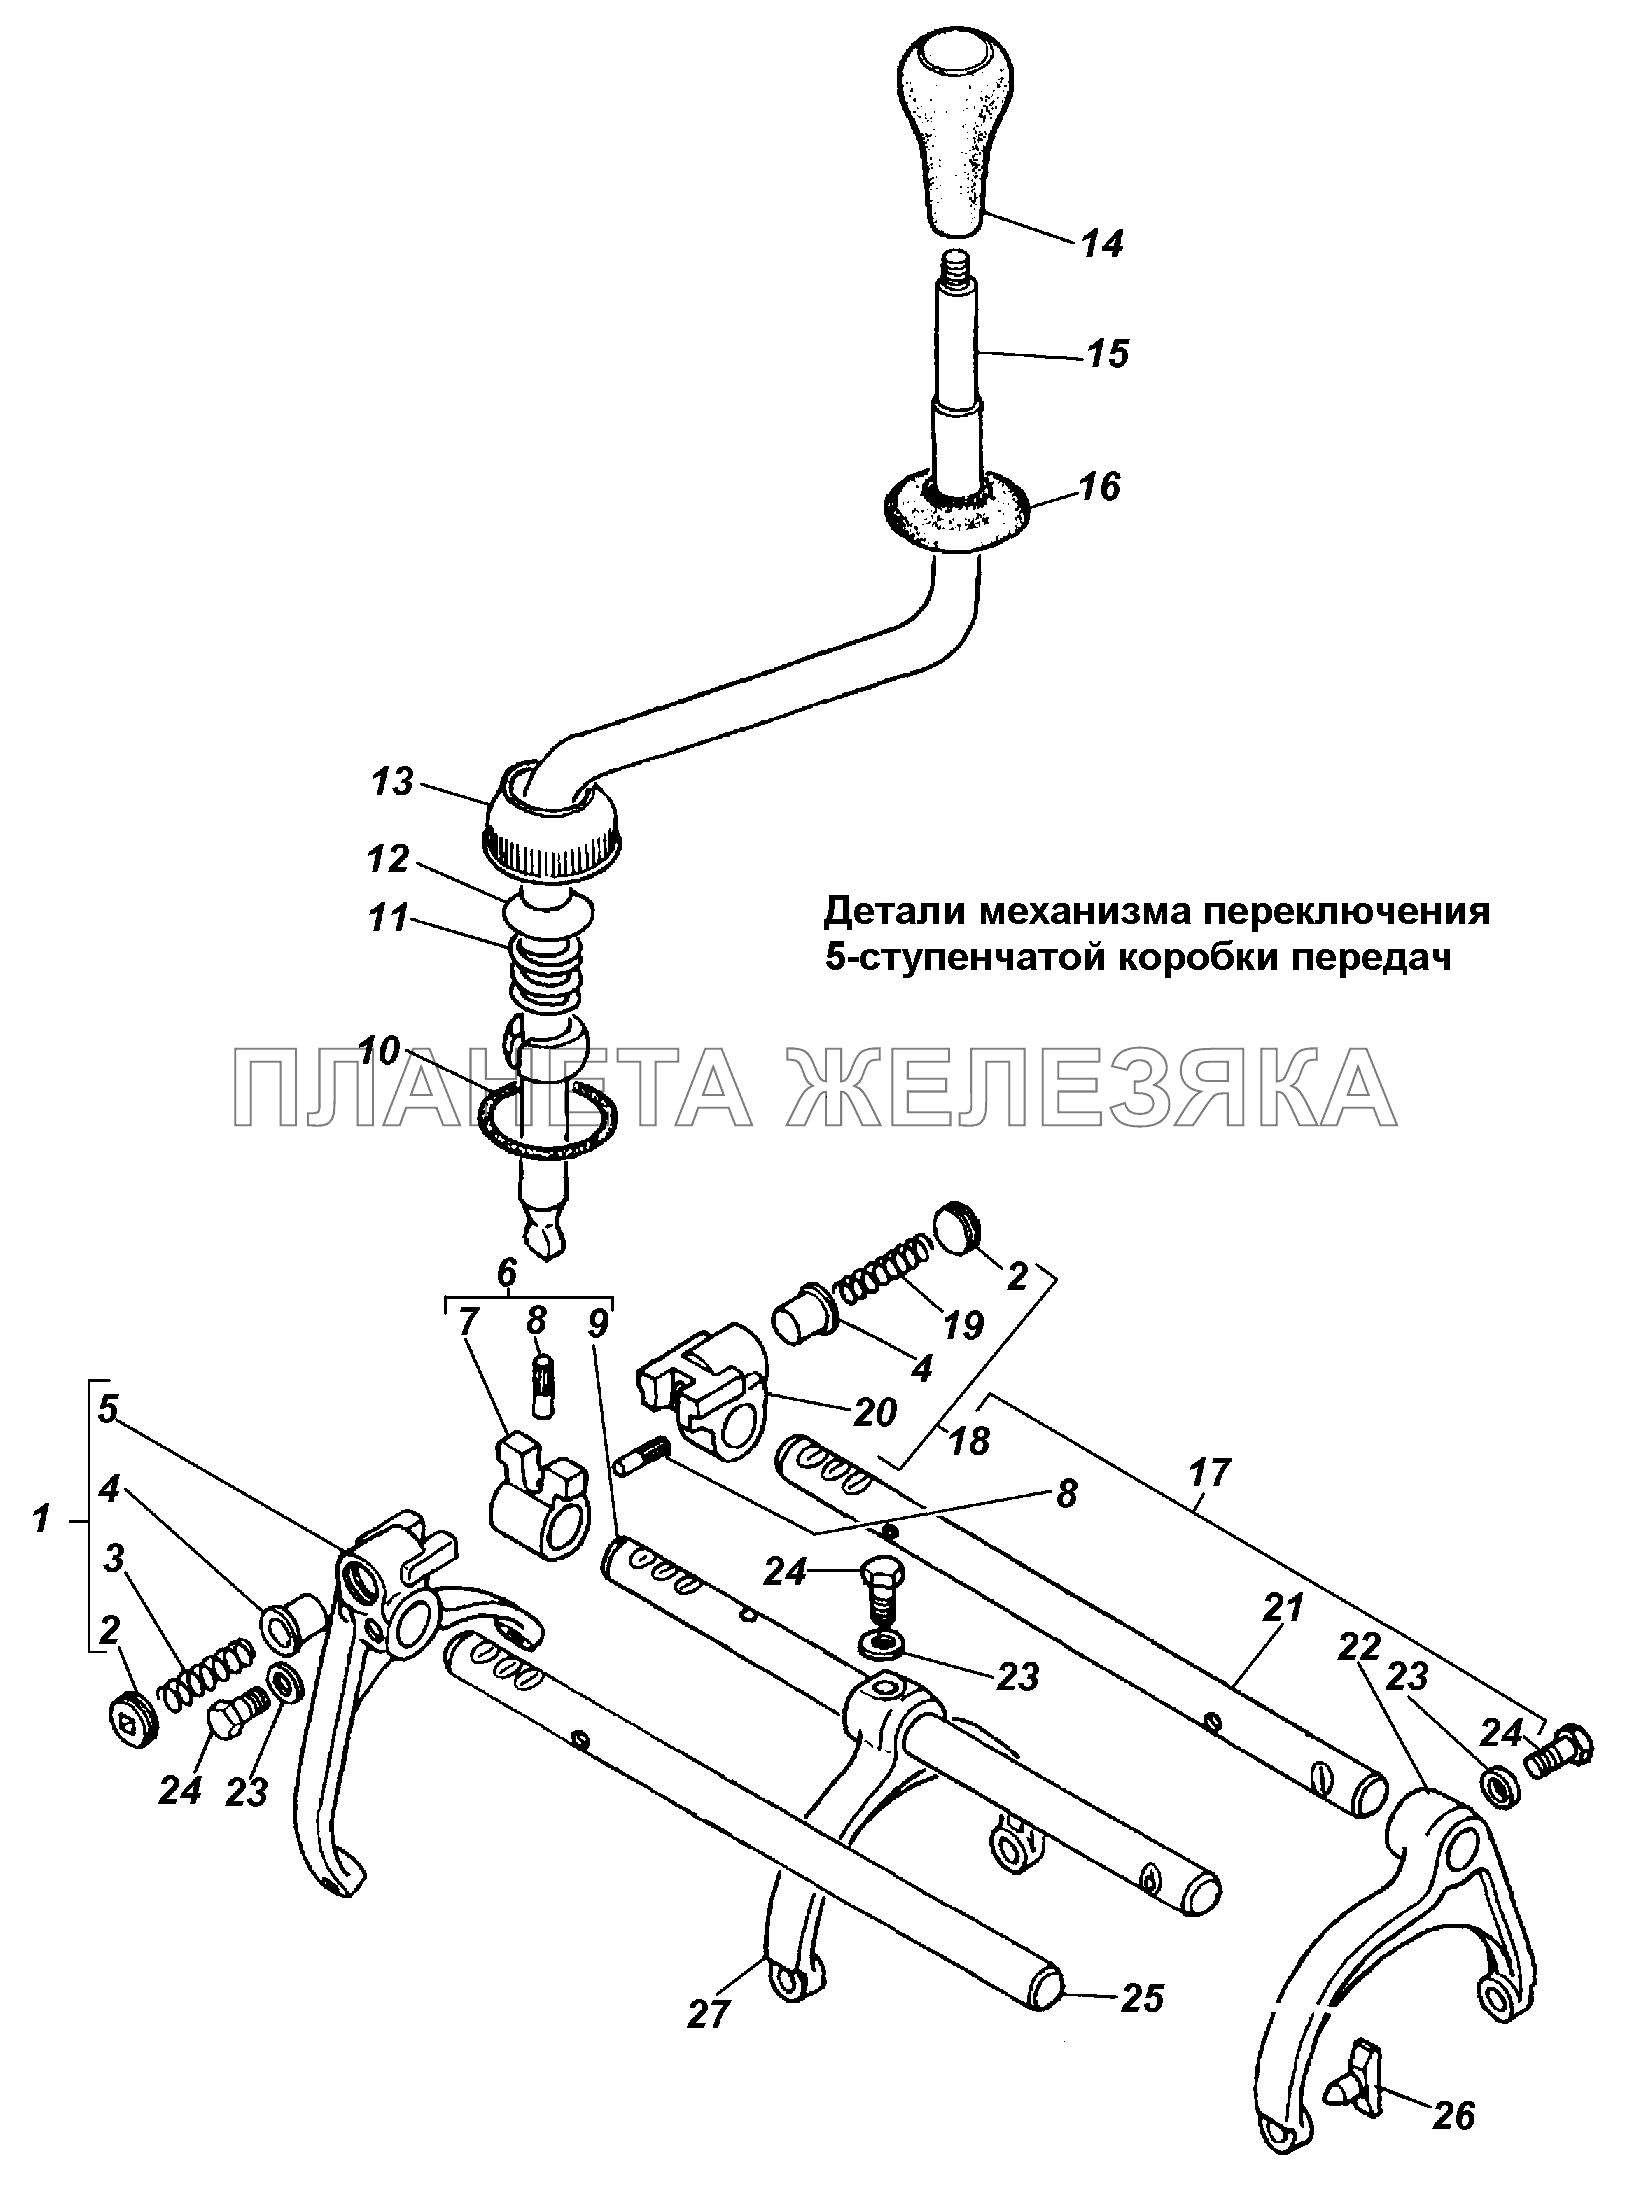 Детали механизма переключения 5-ступенчатой коробки передач ГАЗ-3308